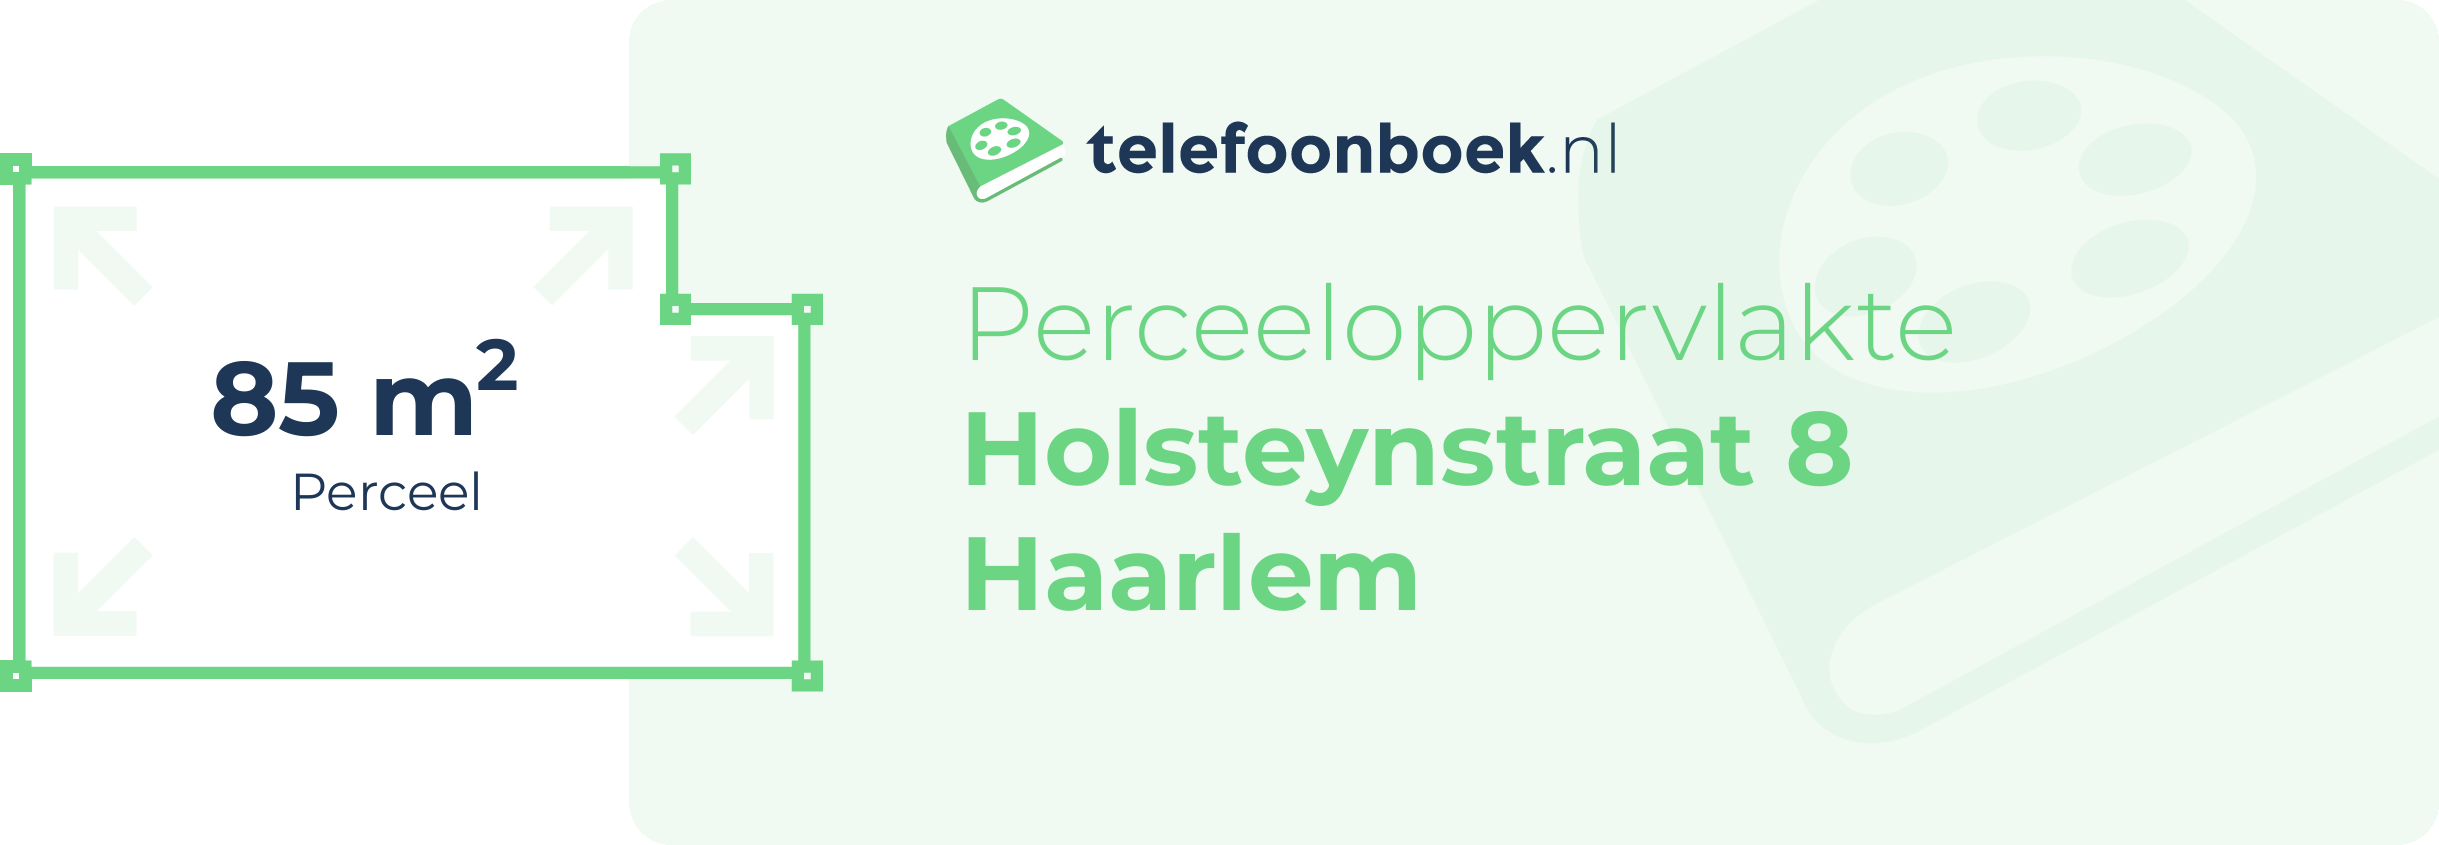 Perceeloppervlakte Holsteynstraat 8 Haarlem